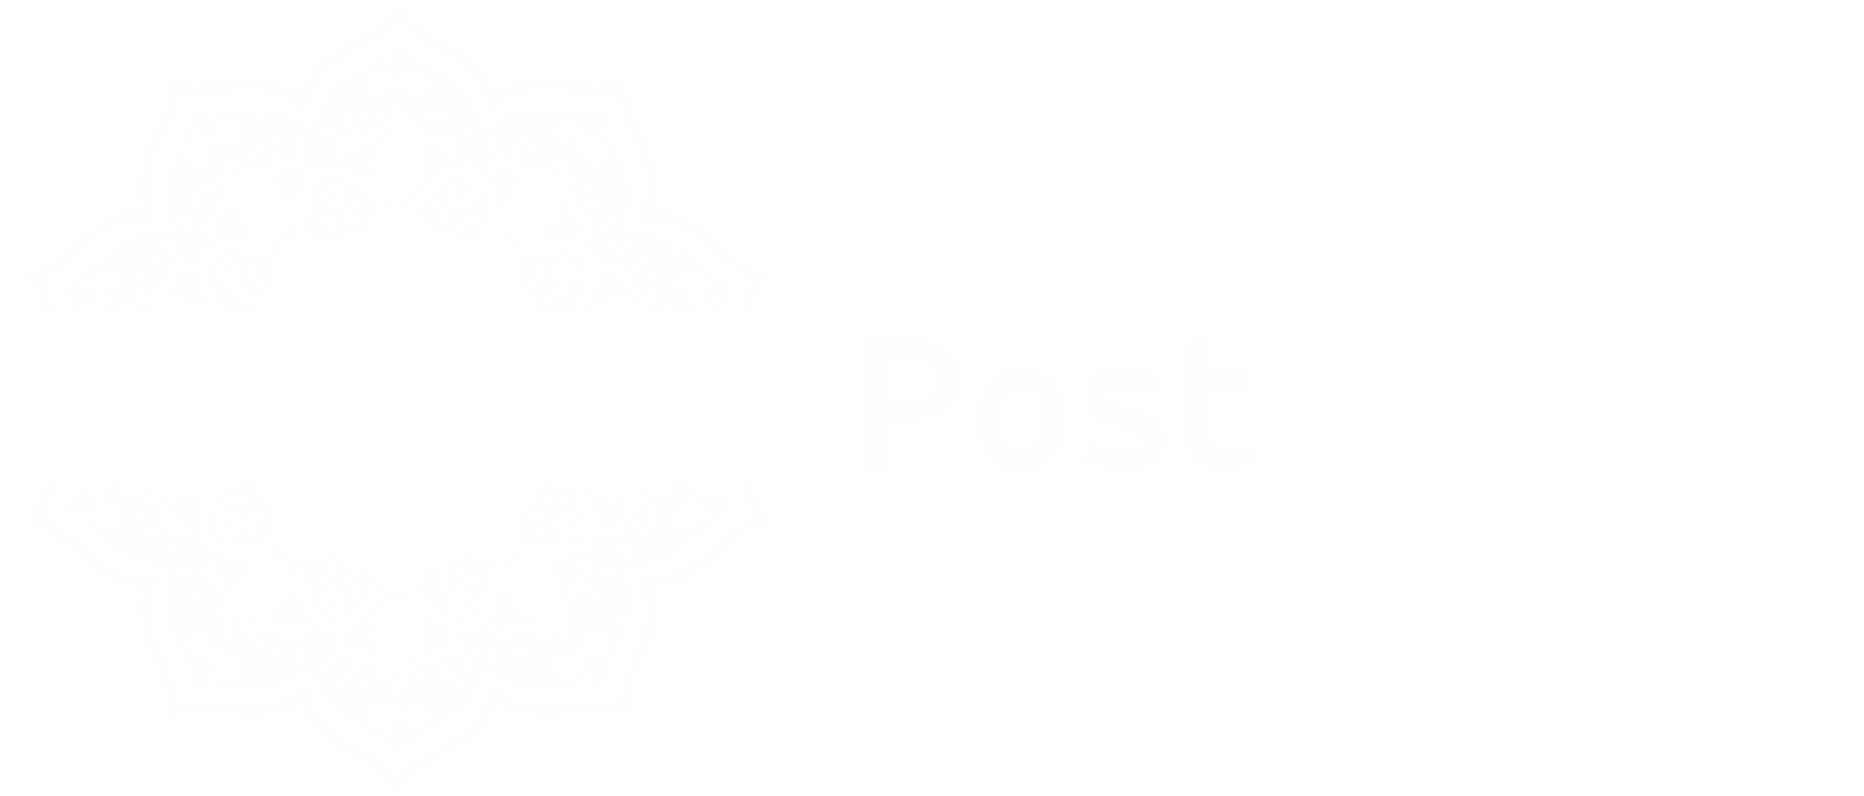 Learn Quran Post